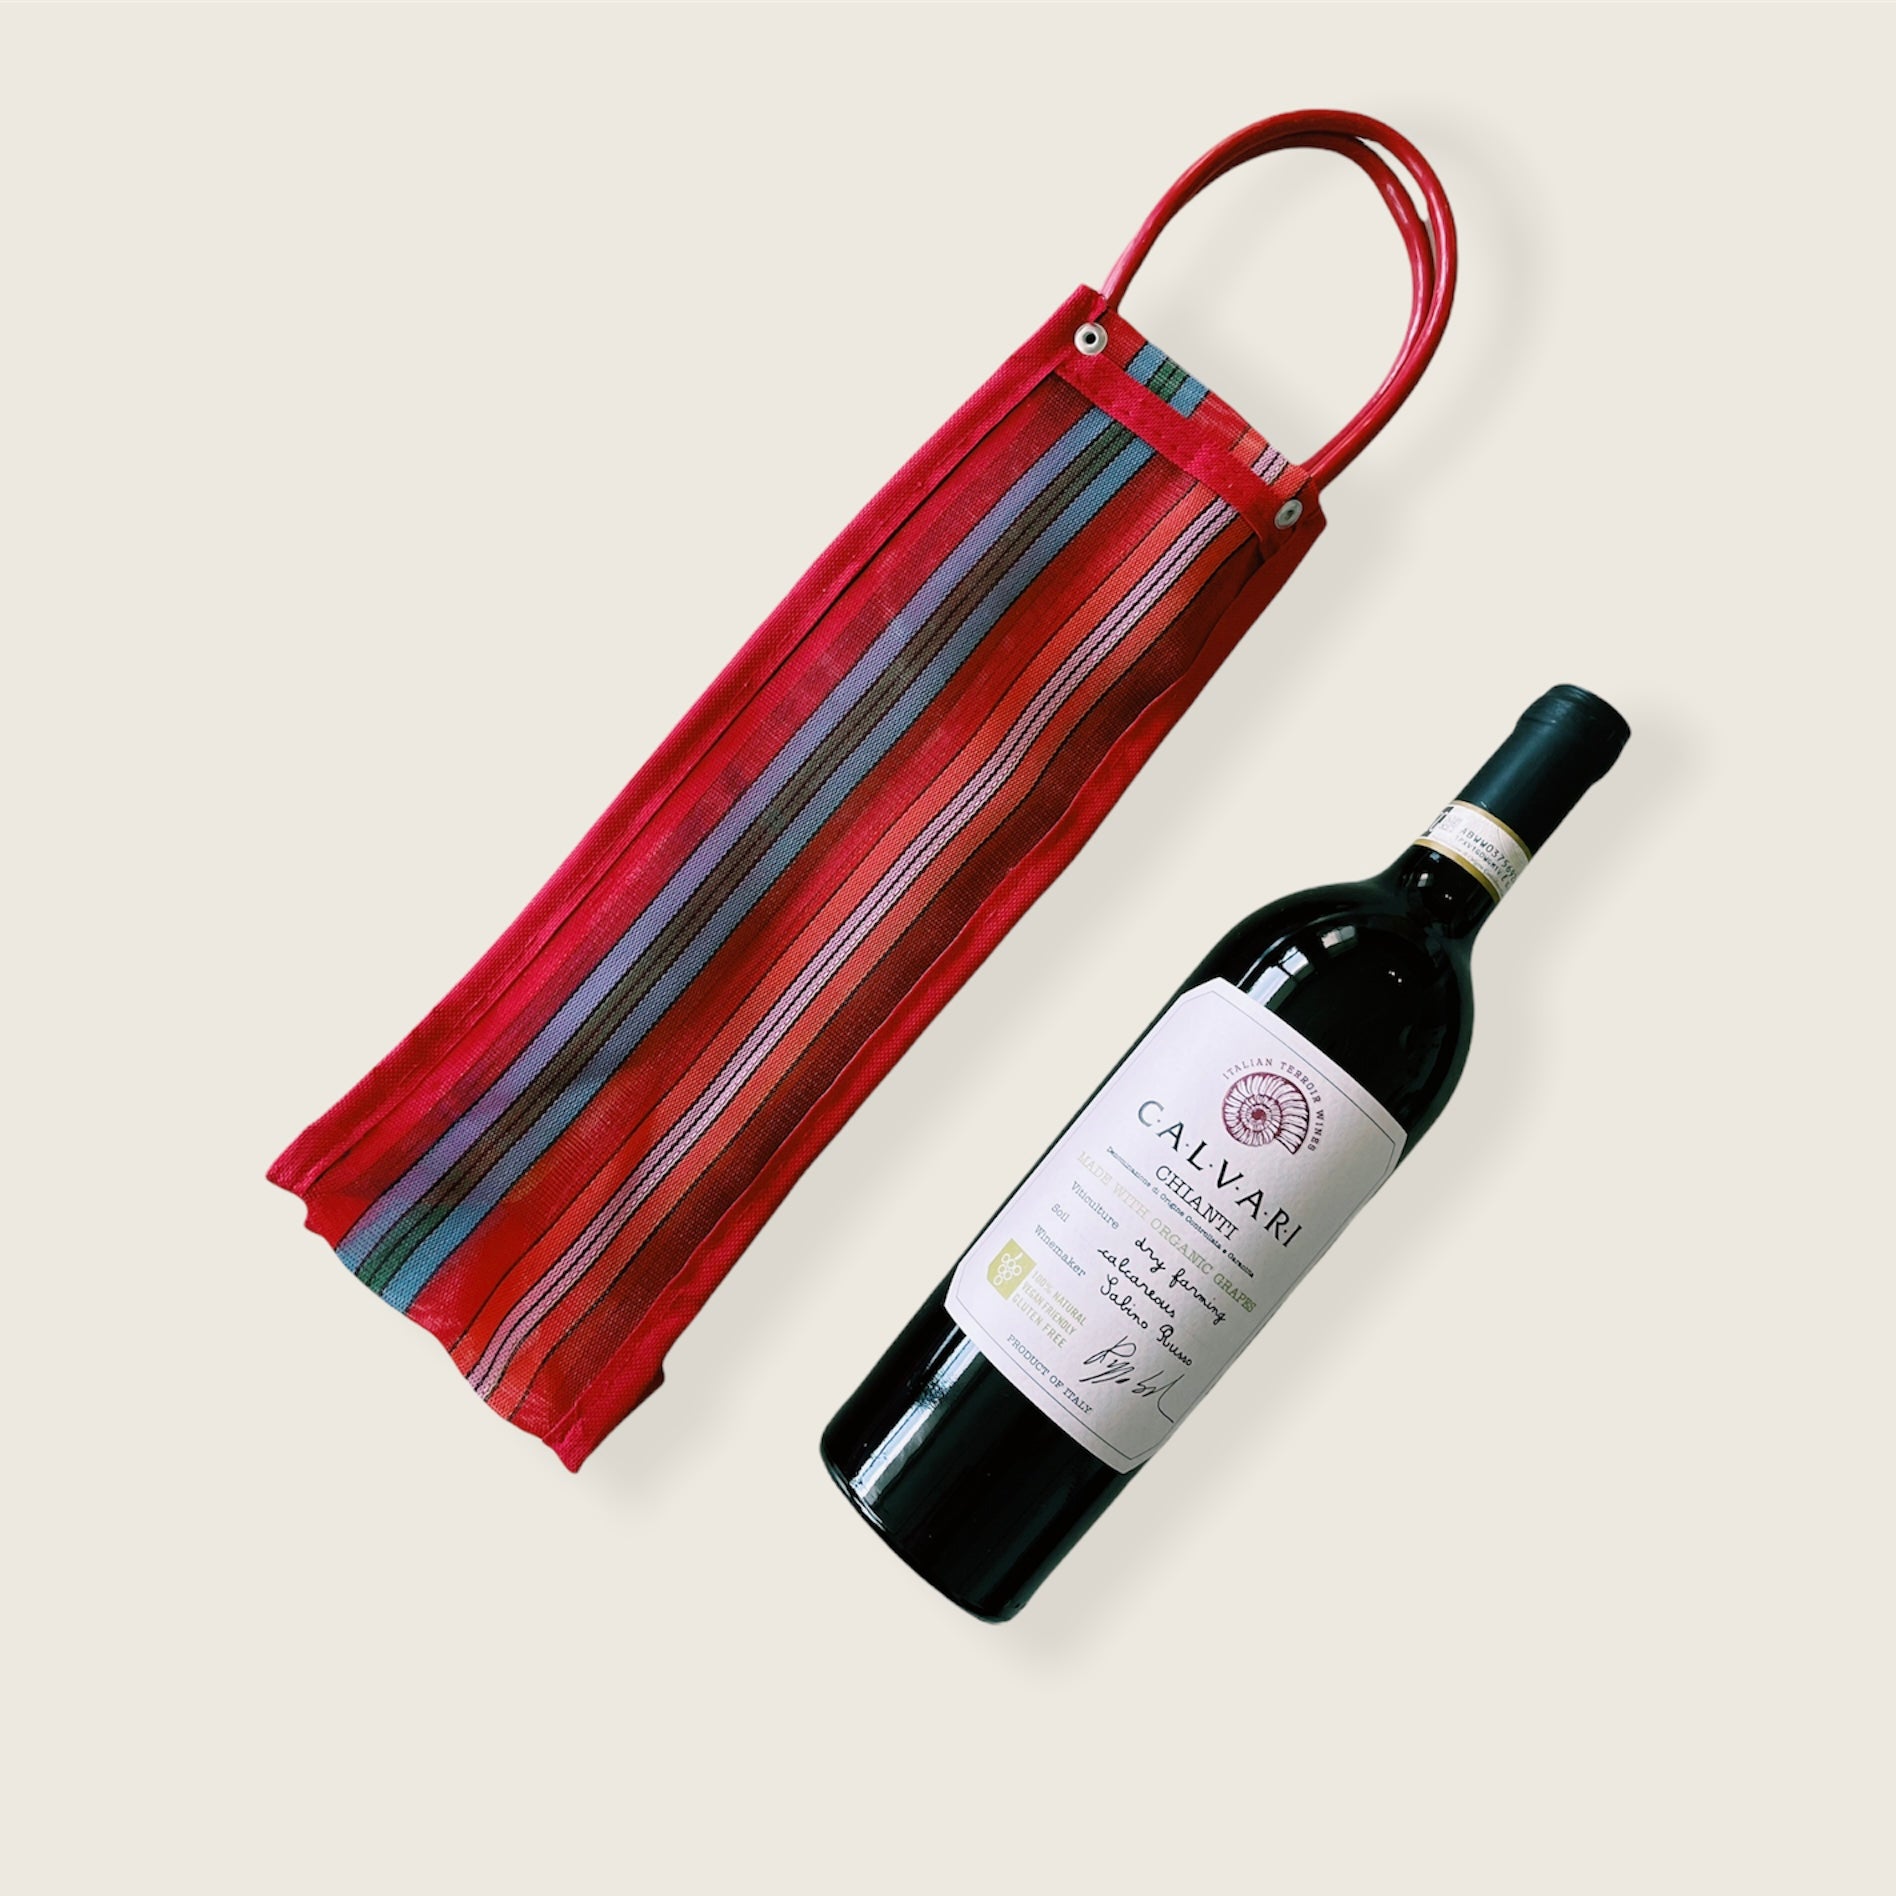 Crochet Wine Bottle Holder (Free & Easy)